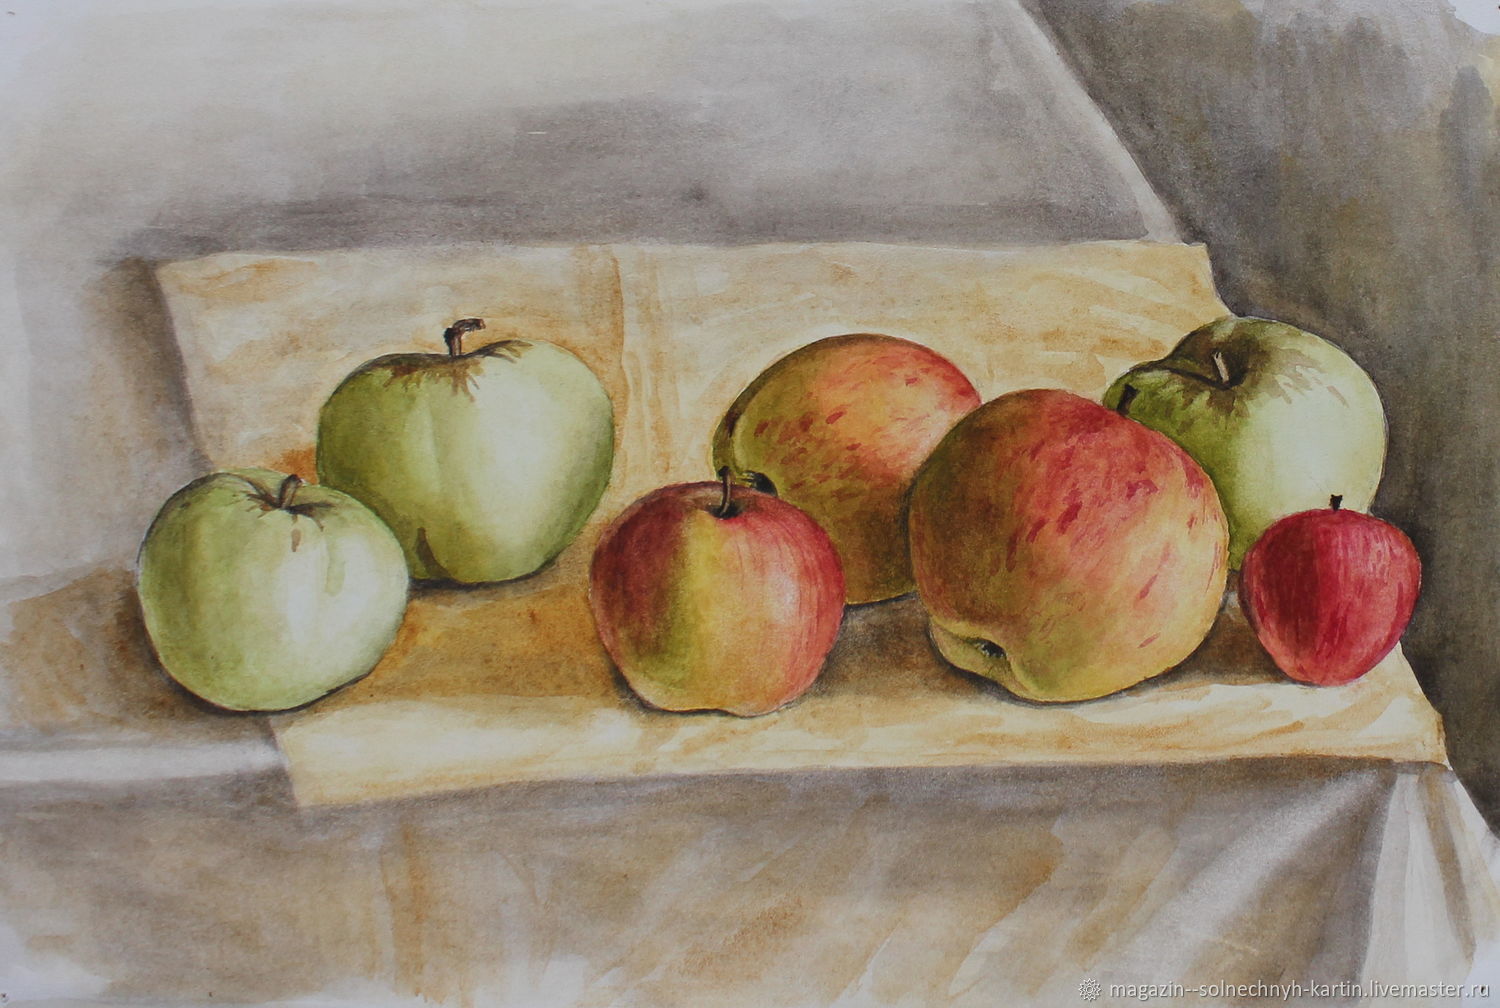 Кончаловский яблоки на столе у печки